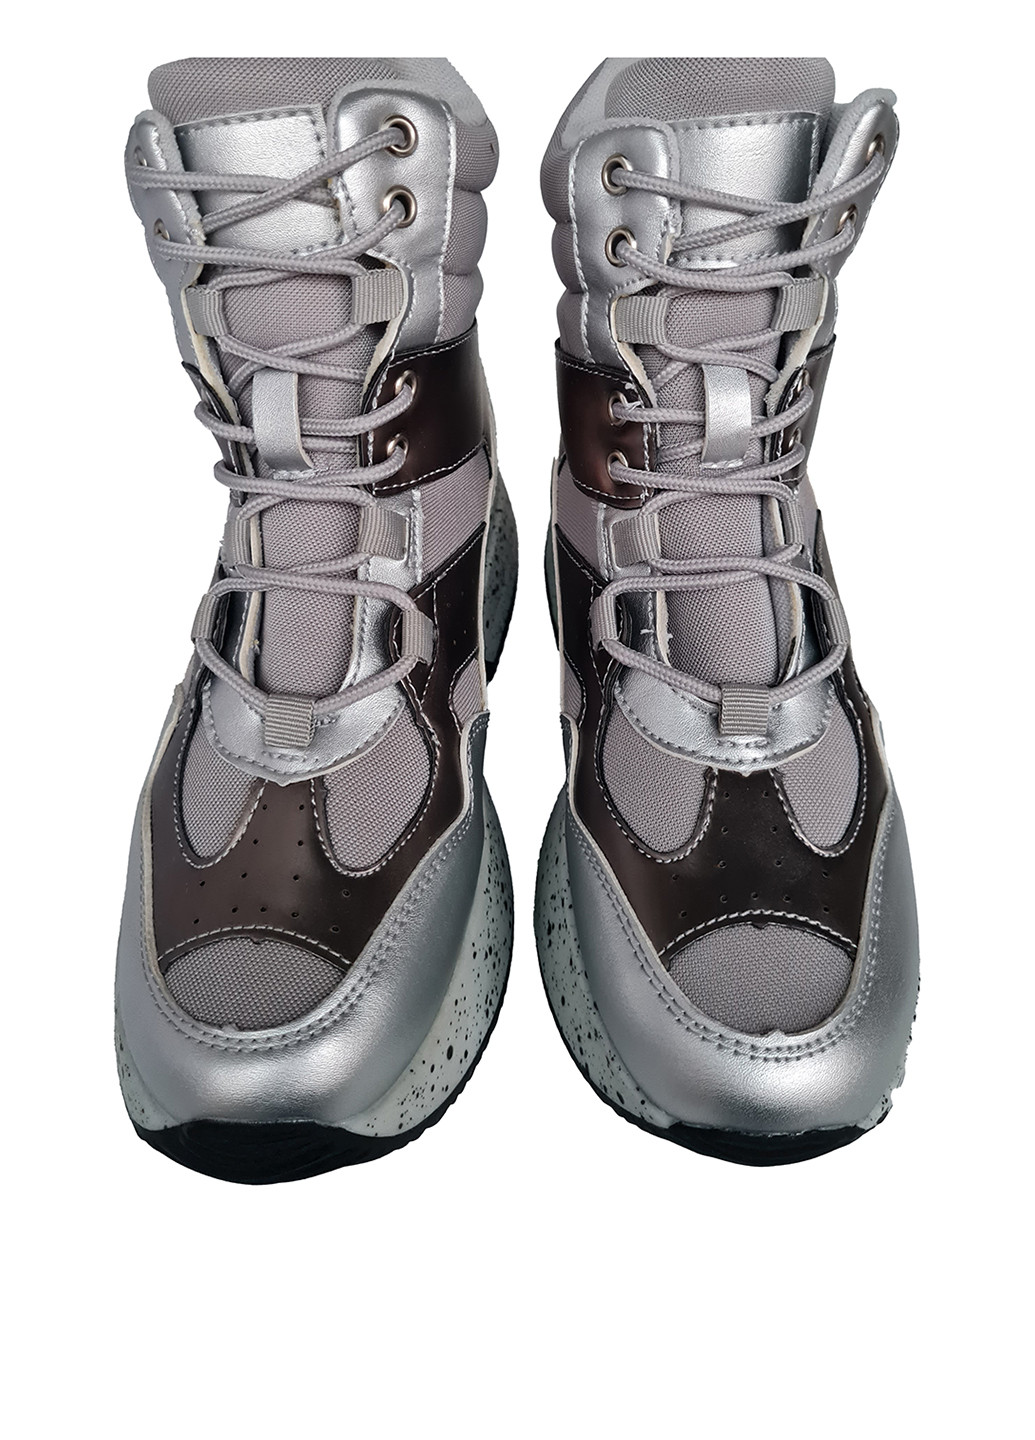 Осенние ботинки B & G с перфорацией тканевые, из искусственной кожи